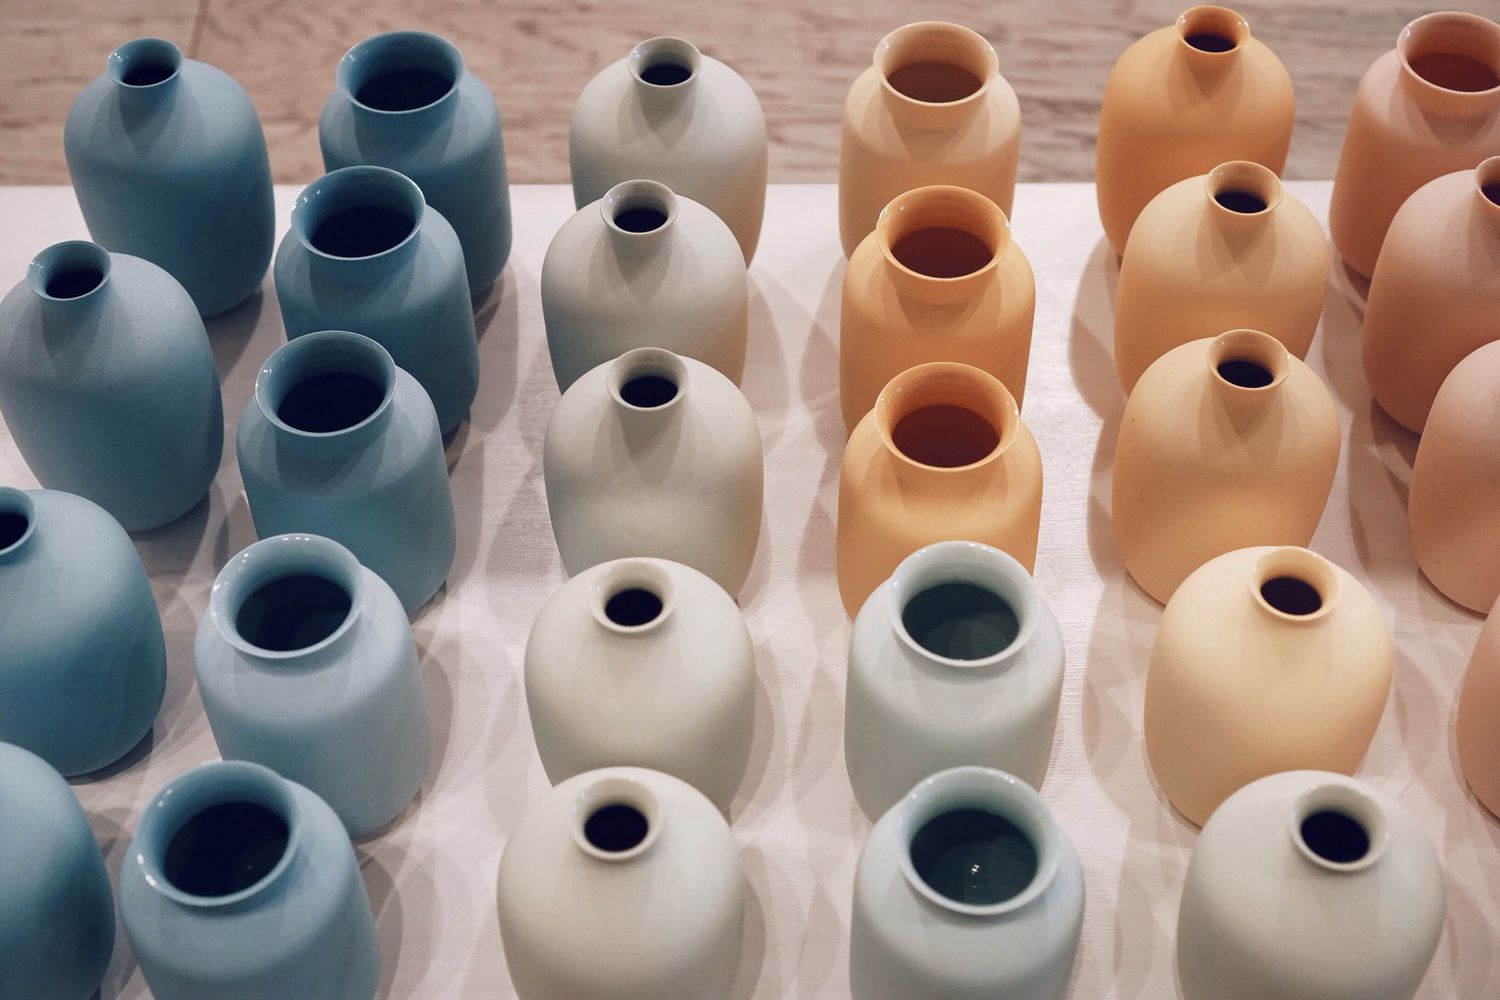 Arranjo de dezenas de vasos de cerâmica coloridos.